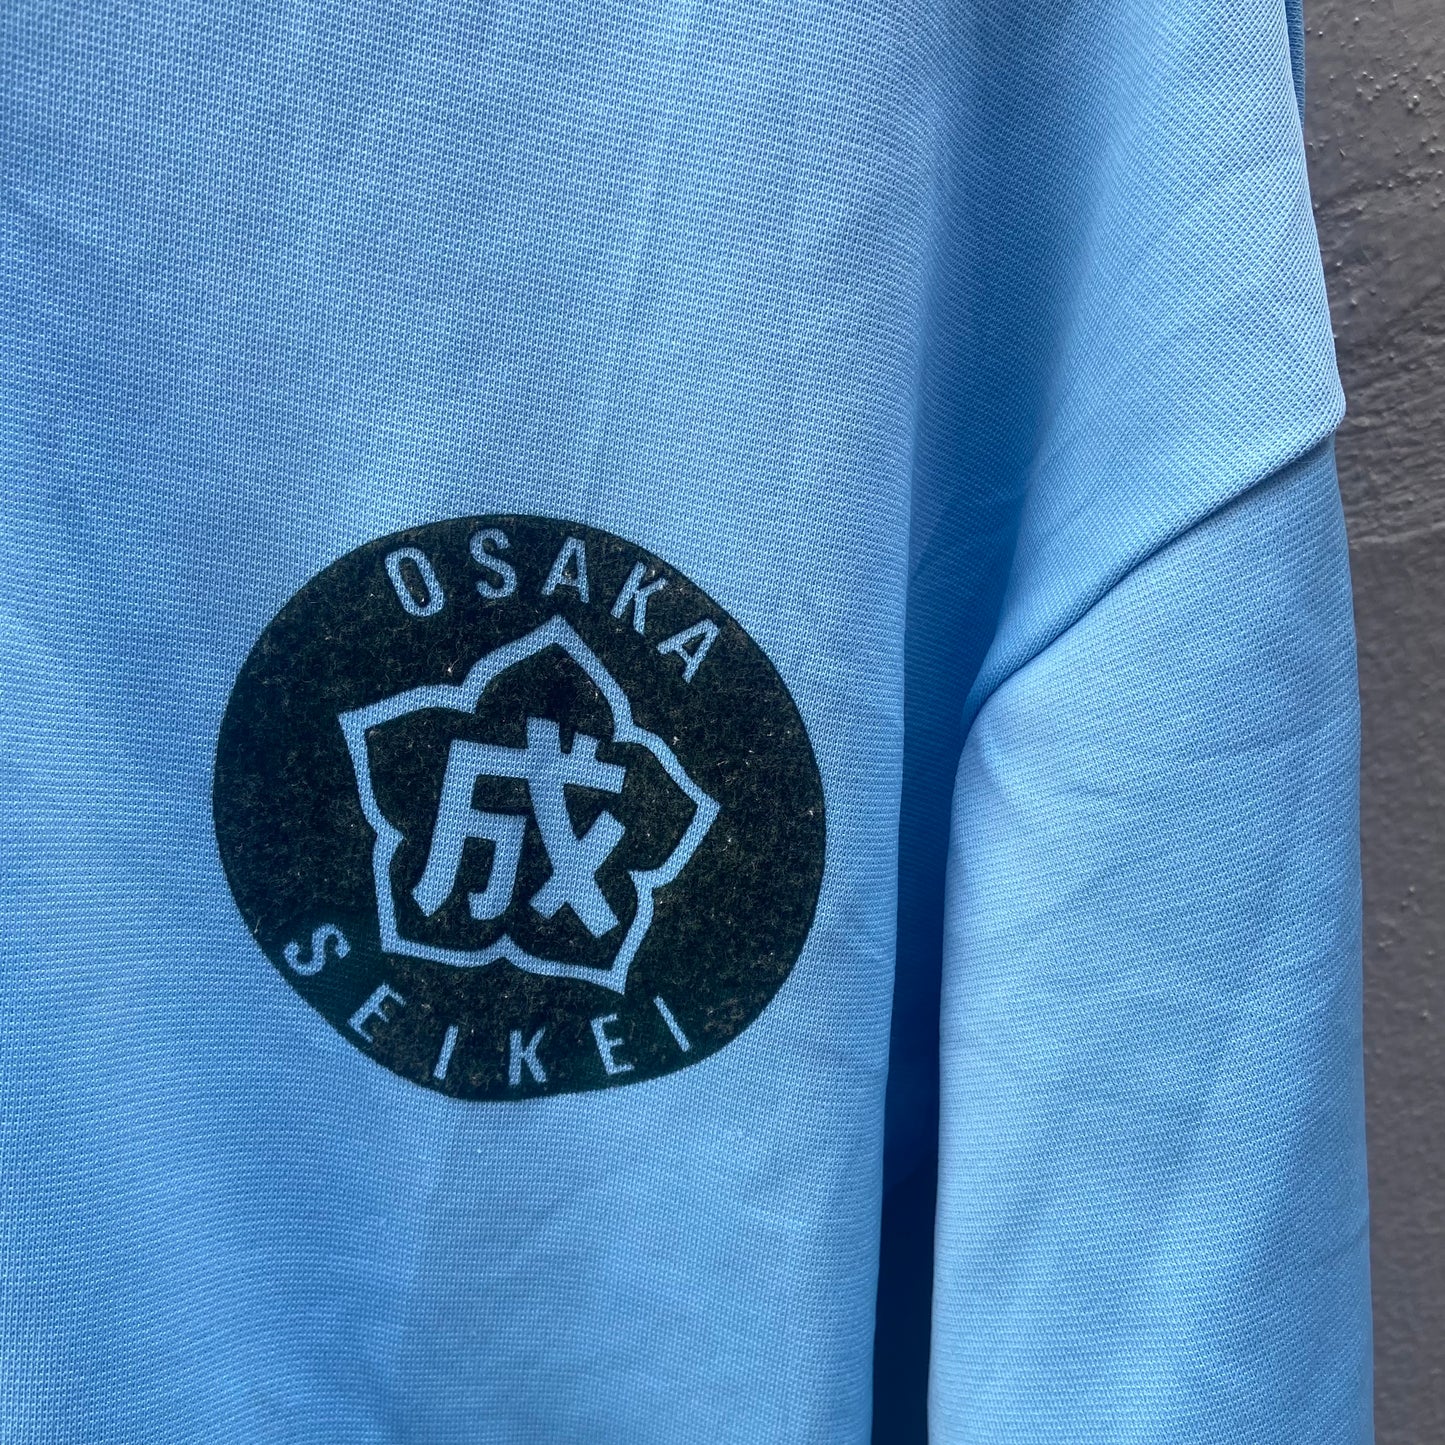 Osaka Seikei Blue Champions Track Suit